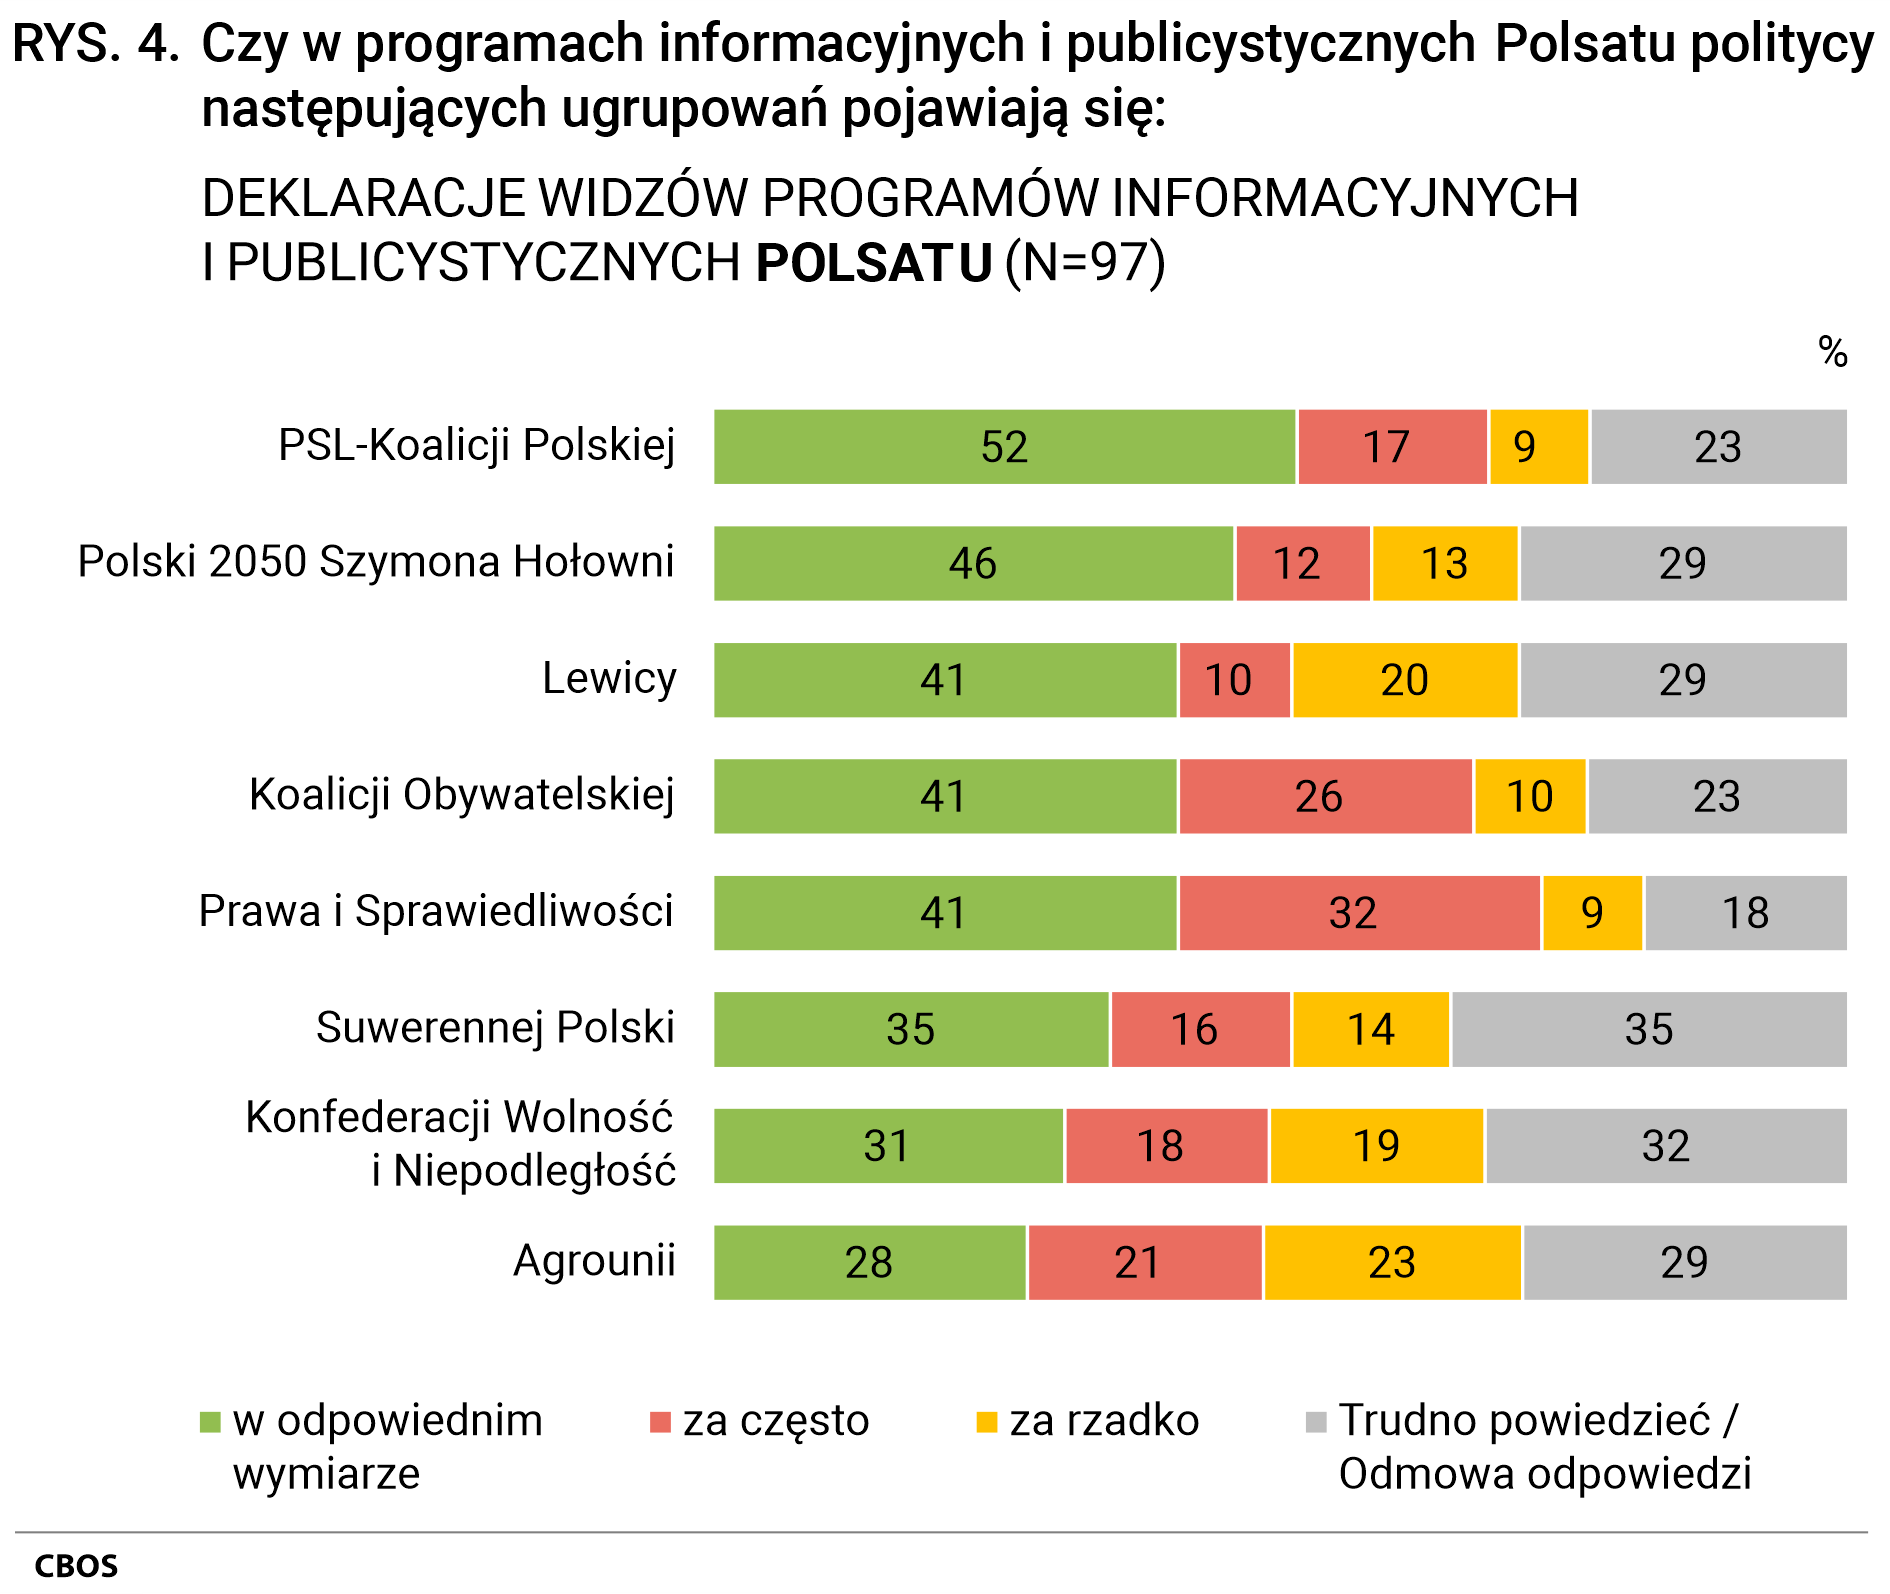 Rysunek 4 Czy w programach informacyjnych i publicystycznych Polsatu politycy następujących ugrupowań pojawiają się. DEKLARACJE WIDZÓW PROGRAMÓW INFORMACYJNYCH I PUBLICYSTYCZNYCH POLSATU (N=97). PSL-Koalicji Polskiej: w odpowiednim wymiarze - 52%, za często - 17%, za rzadko - 9%, Trudno powiedzieć/Odmowa odpowiedzi - 23%; Polski 2050 Szymona Hołowni: w odpowiednim wymiarze - 46%, za często - 12%, za rzadko - 13%, Trudno powiedzieć/Odmowa odpowiedzi - 29%; Lewicy: w odpowiednim wymiarze - 41%, za często - 10%, za rzadko - 20%, Trudno powiedzieć/Odmowa odpowiedzi - 29%; Koalicji Obywatelskiej: w odpowiednim wymiarze - 41%, za często - 26%, za rzadko - 10%, Trudno powiedzieć/Odmowa odpowiedzi - 23%; Prawa i Sprawiedliwości: w odpowiednim wymiarze - 41%, za często - 32%, za rzadko - 9%, Trudno powiedzieć/Odmowa odpowiedzi - 18%; Suwerennej Polski: w odpowiednim wymiarze - 35%, za często - 16%, za rzadko - 14%, Trudno powiedzieć/Odmowa odpowiedzi - 35%; Konfederacji Wolność i Niepodległość: w odpowiednim wymiarze - 31%, za często - 18%, za rzadko - 19%, Trudno powiedzieć/Odmowa odpowiedzi - 32%; Agrounii: w odpowiednim wymiarze - 28%, za często - 21%, za rzadko - 23%, Trudno powiedzieć/Odmowa odpowiedzi - 29%.